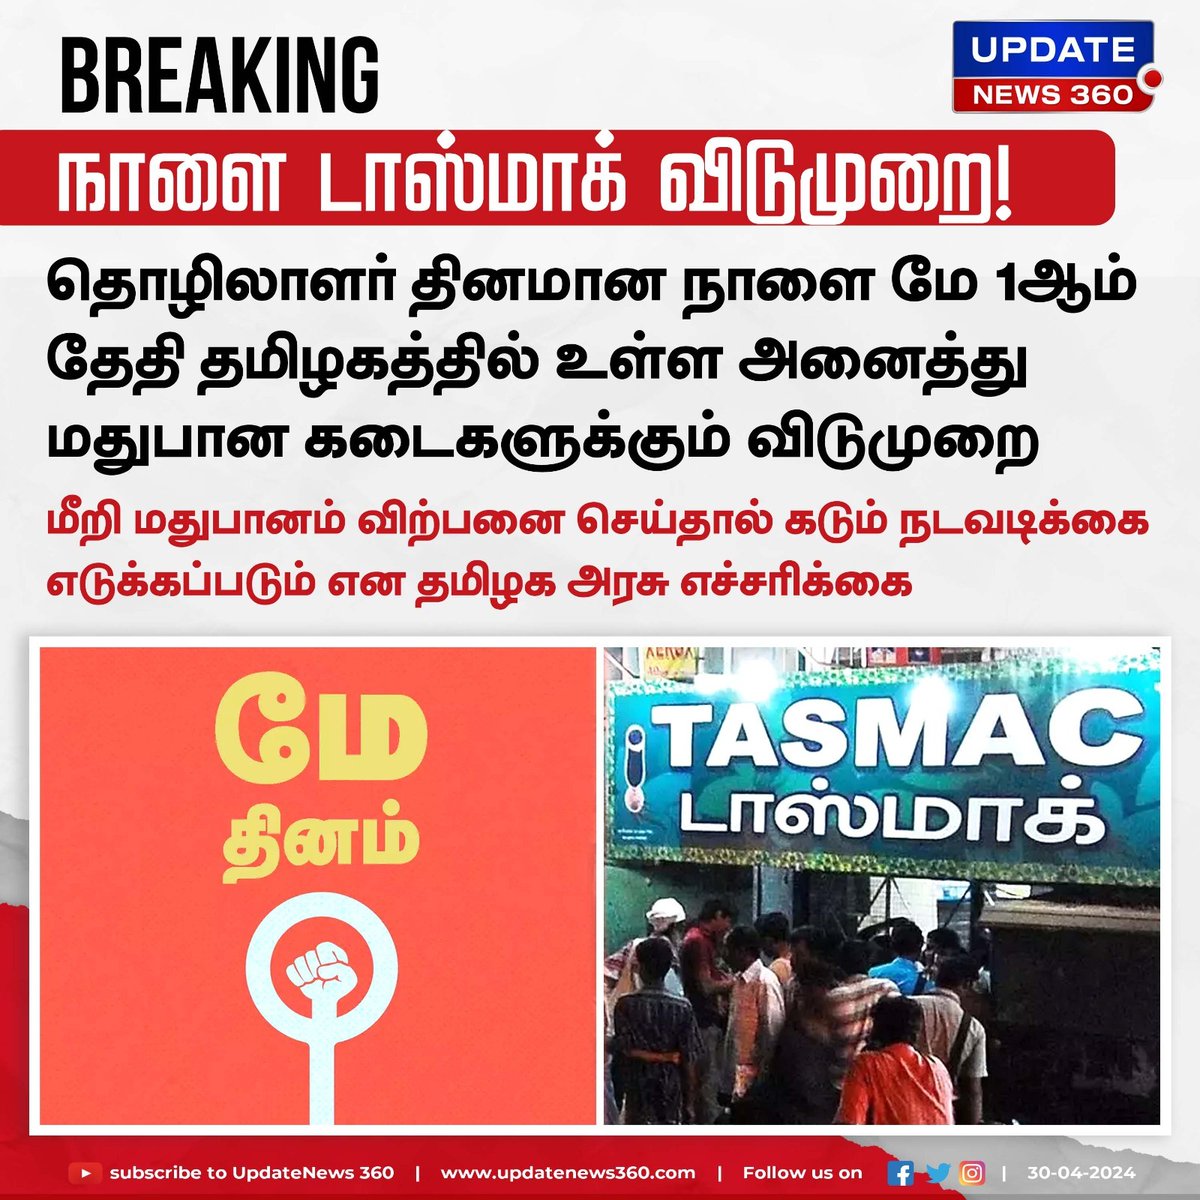 டாஸ்மாக் கடைகளுக்கு நாளை விடுமுறை அறிவிப்பு..!!!

#UpdateNews | #TamilNadu | #LaborDay | #TASMAC | #Holiday | #TNGovt | #TamilNews | #Updatenews360